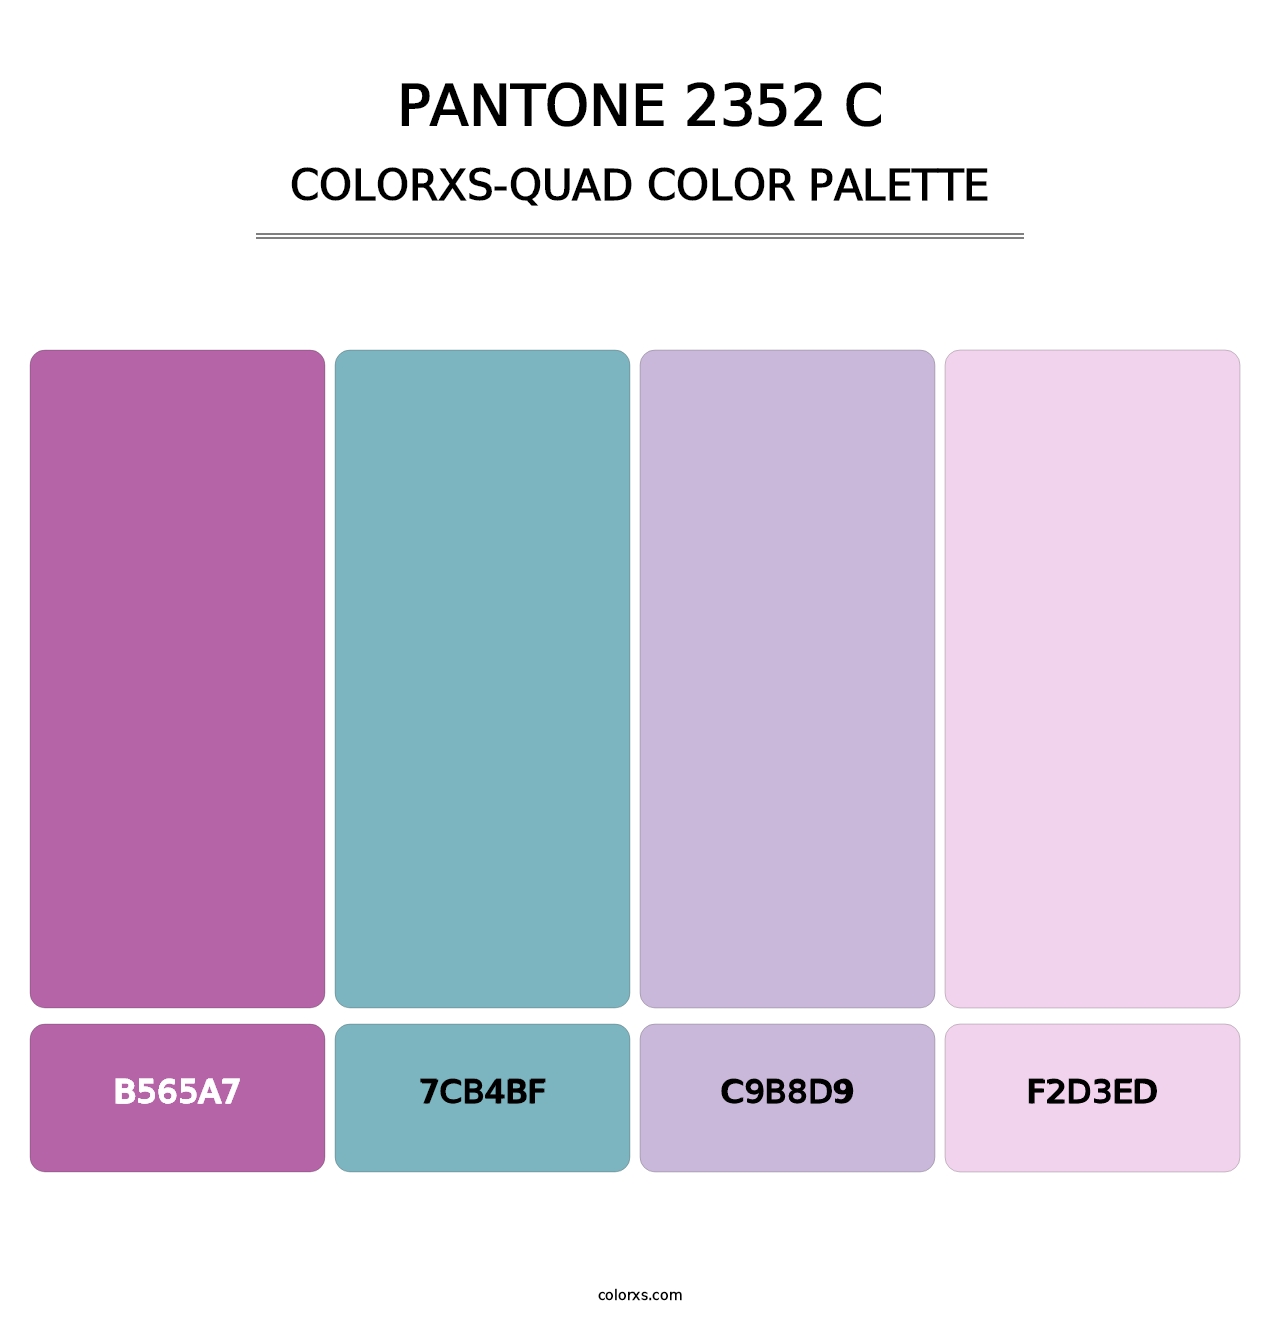 PANTONE 2352 C - Colorxs Quad Palette